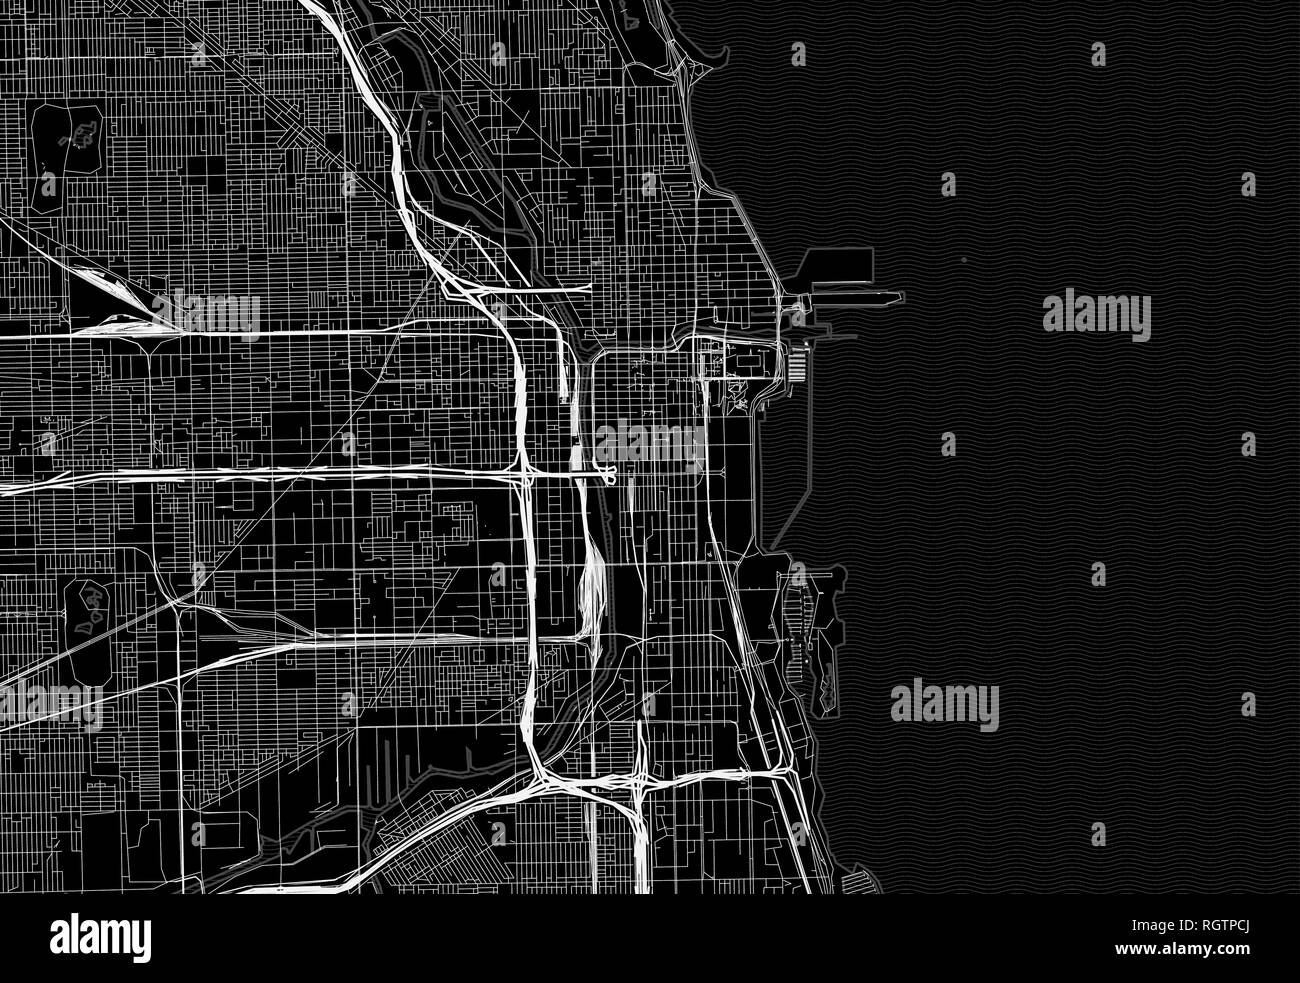 Carte noire du centre-ville de Chicago, États-Unis d'Amérique ce vecteur artmap est créé comme un arrière-plan décoratif ou un signe de voyage unique. Illustration de Vecteur